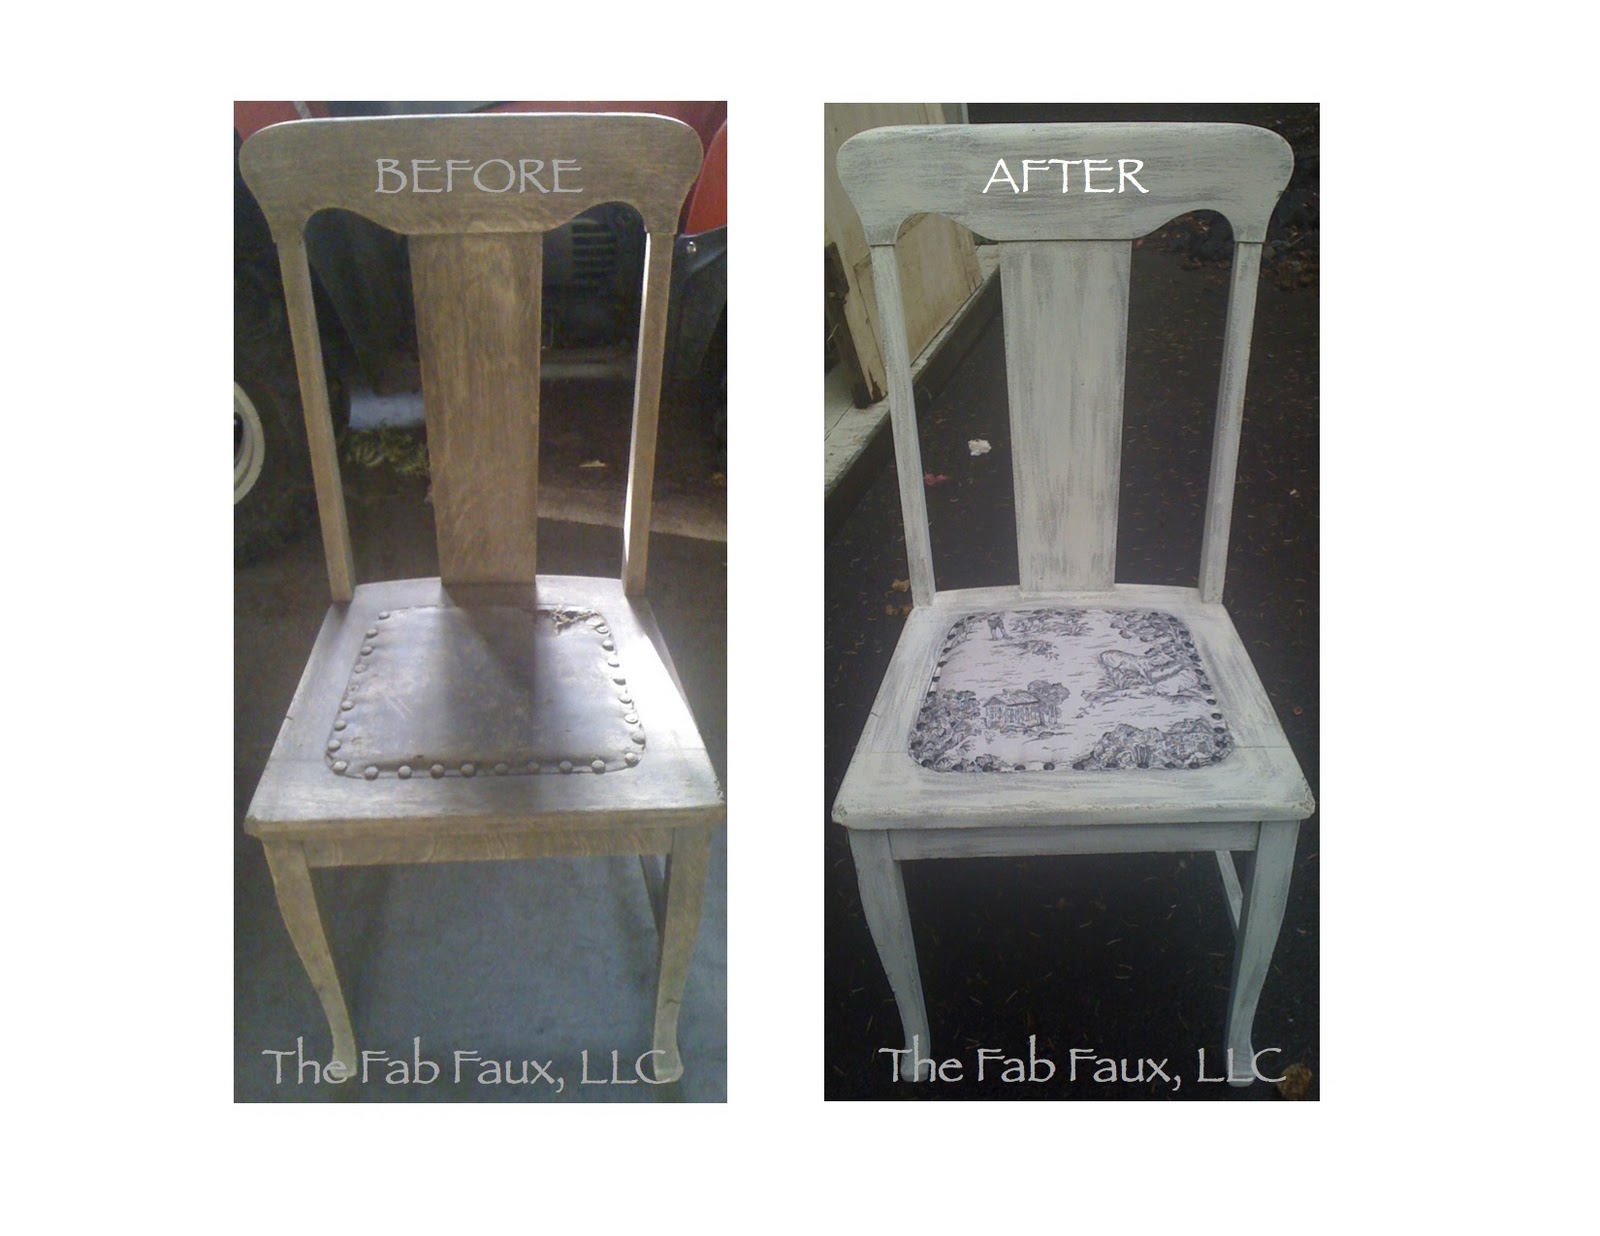 http://1.bp.blogspot.com/-KctYQ2ss7Gs/Tn-4v9-RAlI/AAAAAAAAAP0/itgTLJg_Xns/s1600/Before+%2526+After+Chair.jpg